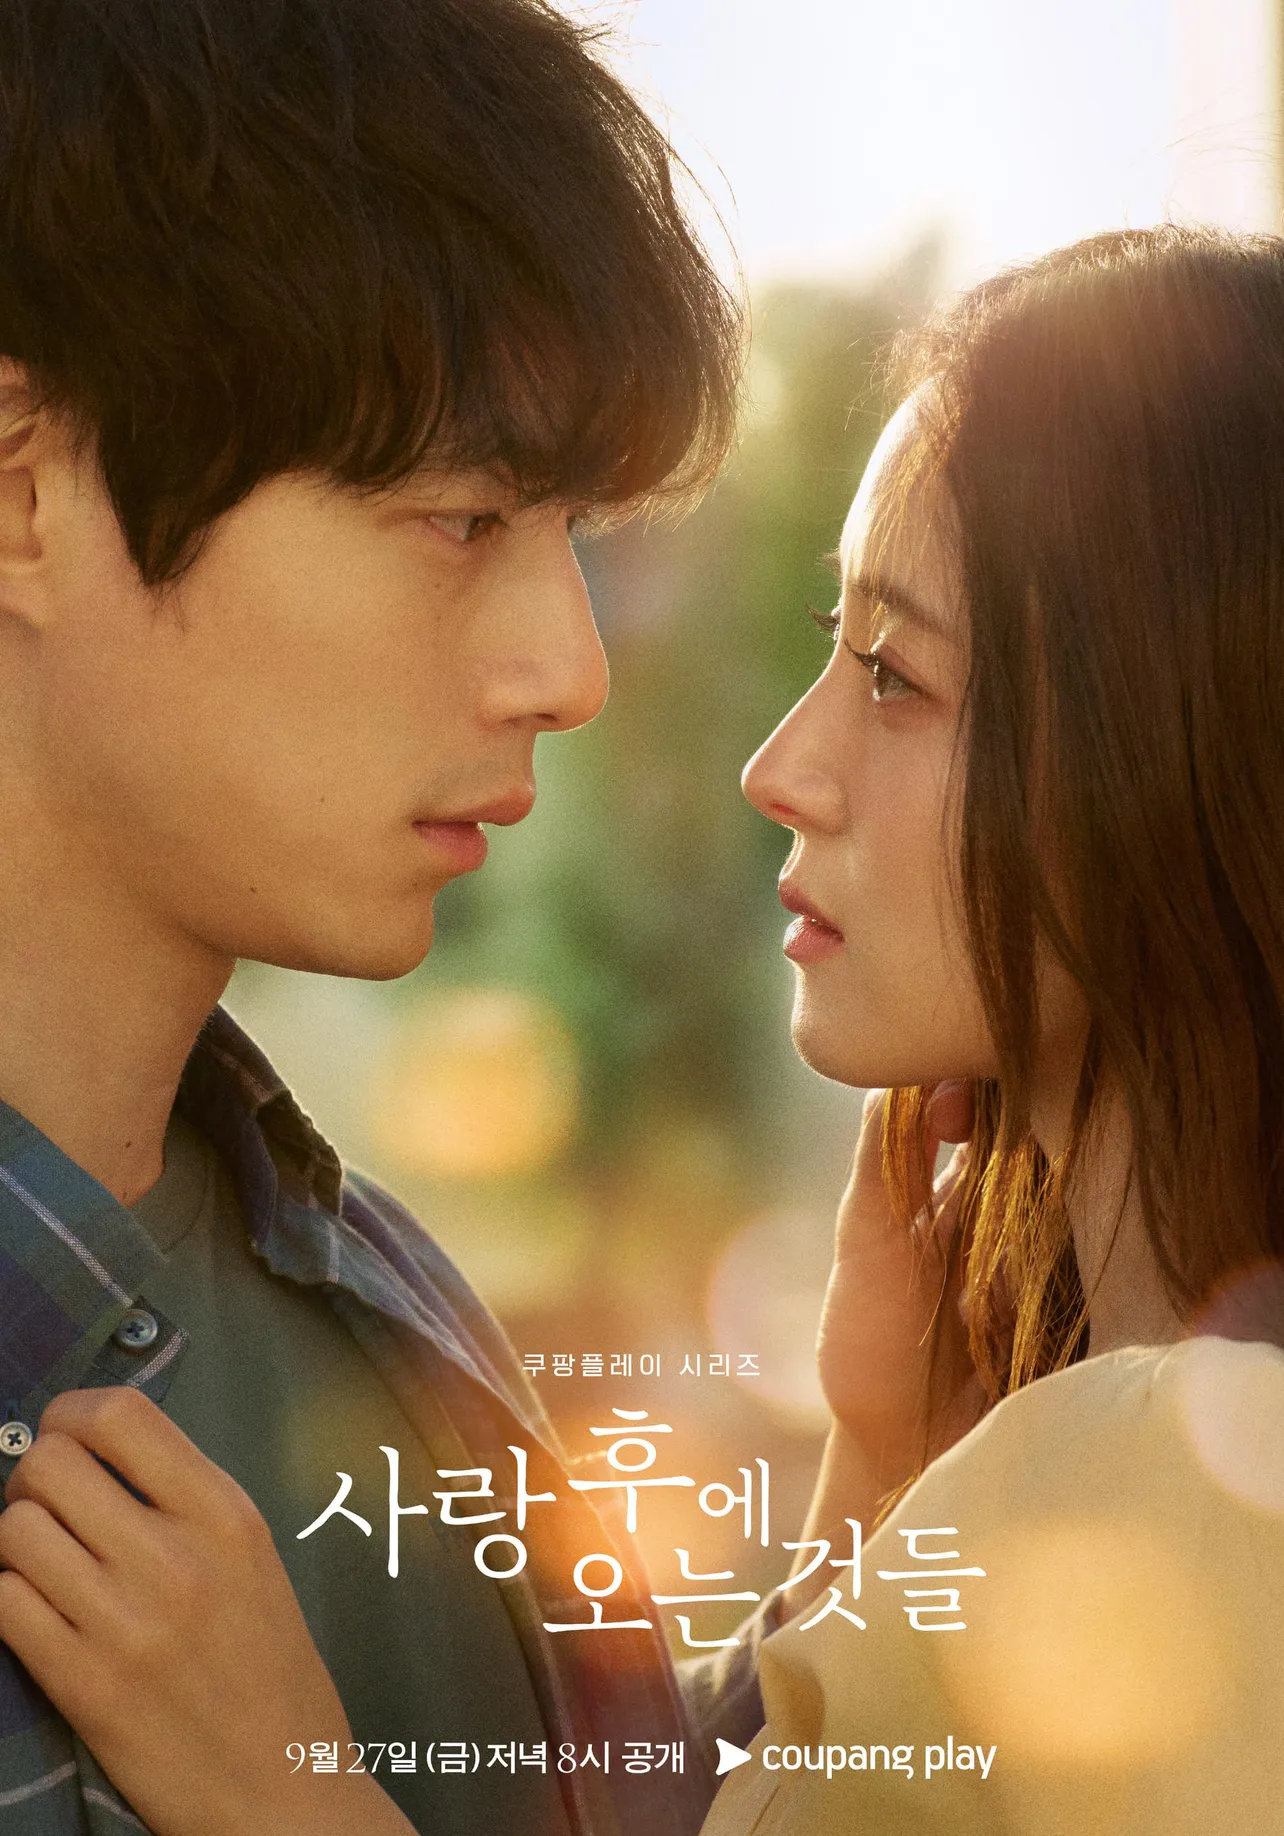 韓国ドラマ「愛のあとにくるもの」ポスターが解禁